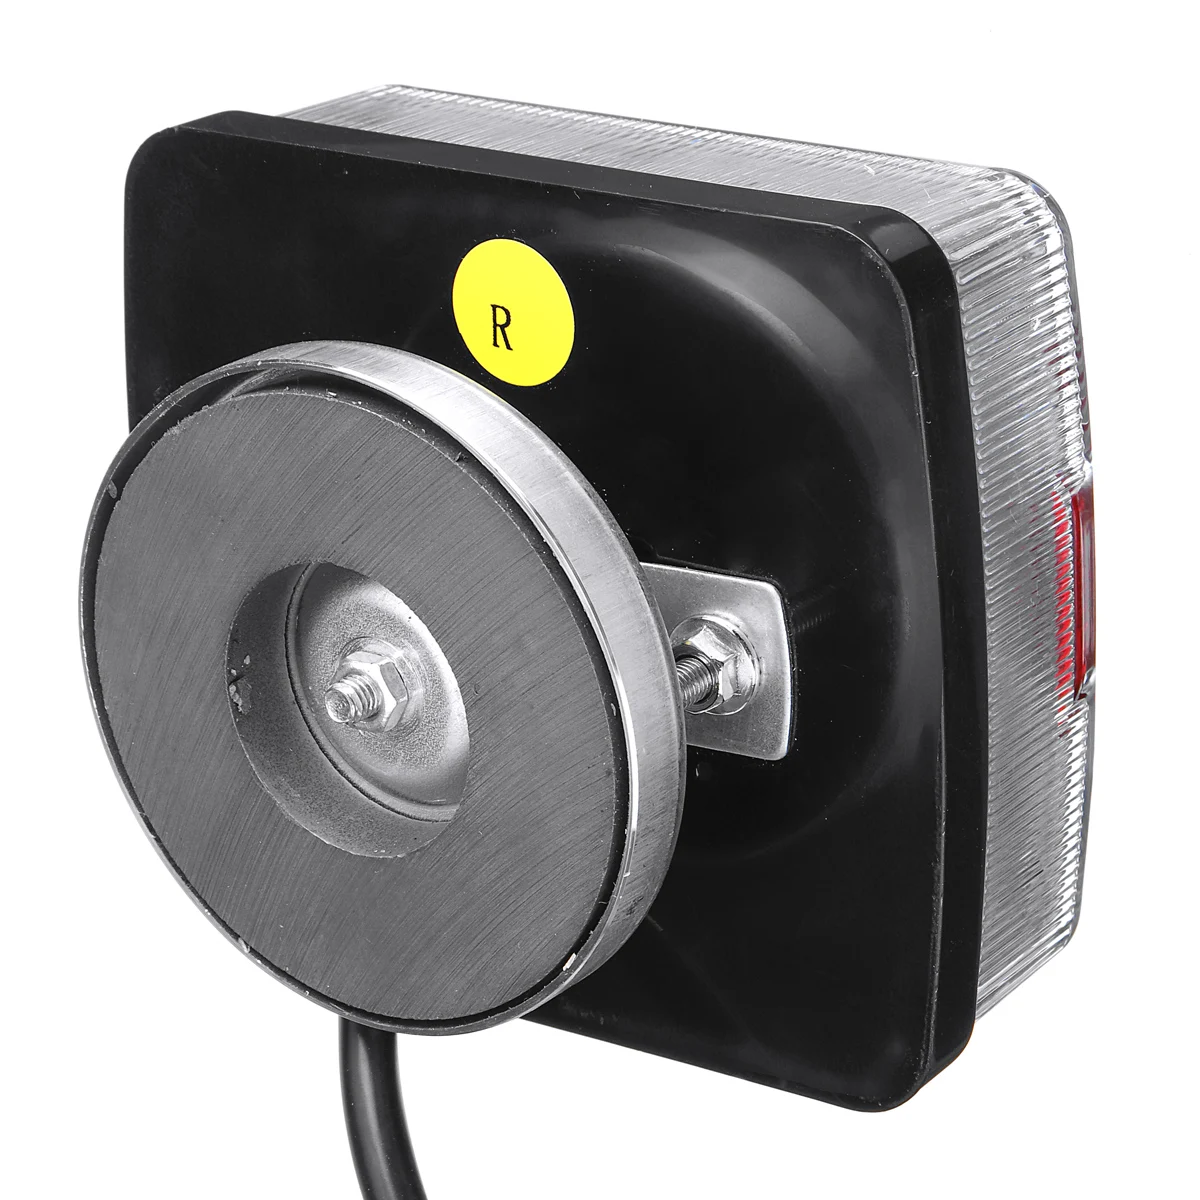 2X12 В 5 функций 30 светодиодный буксировочный светильник для прицепа задний индикатор тормоза отражатель номерной знак мощный магнит легко подходит